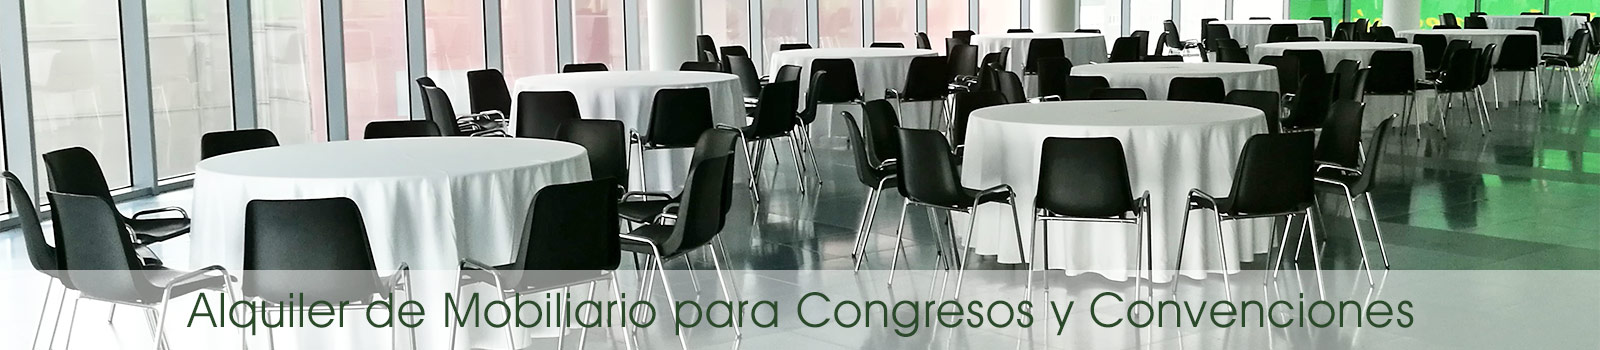 lquiler de mobiliario para congresos y convenciones en Madrid.